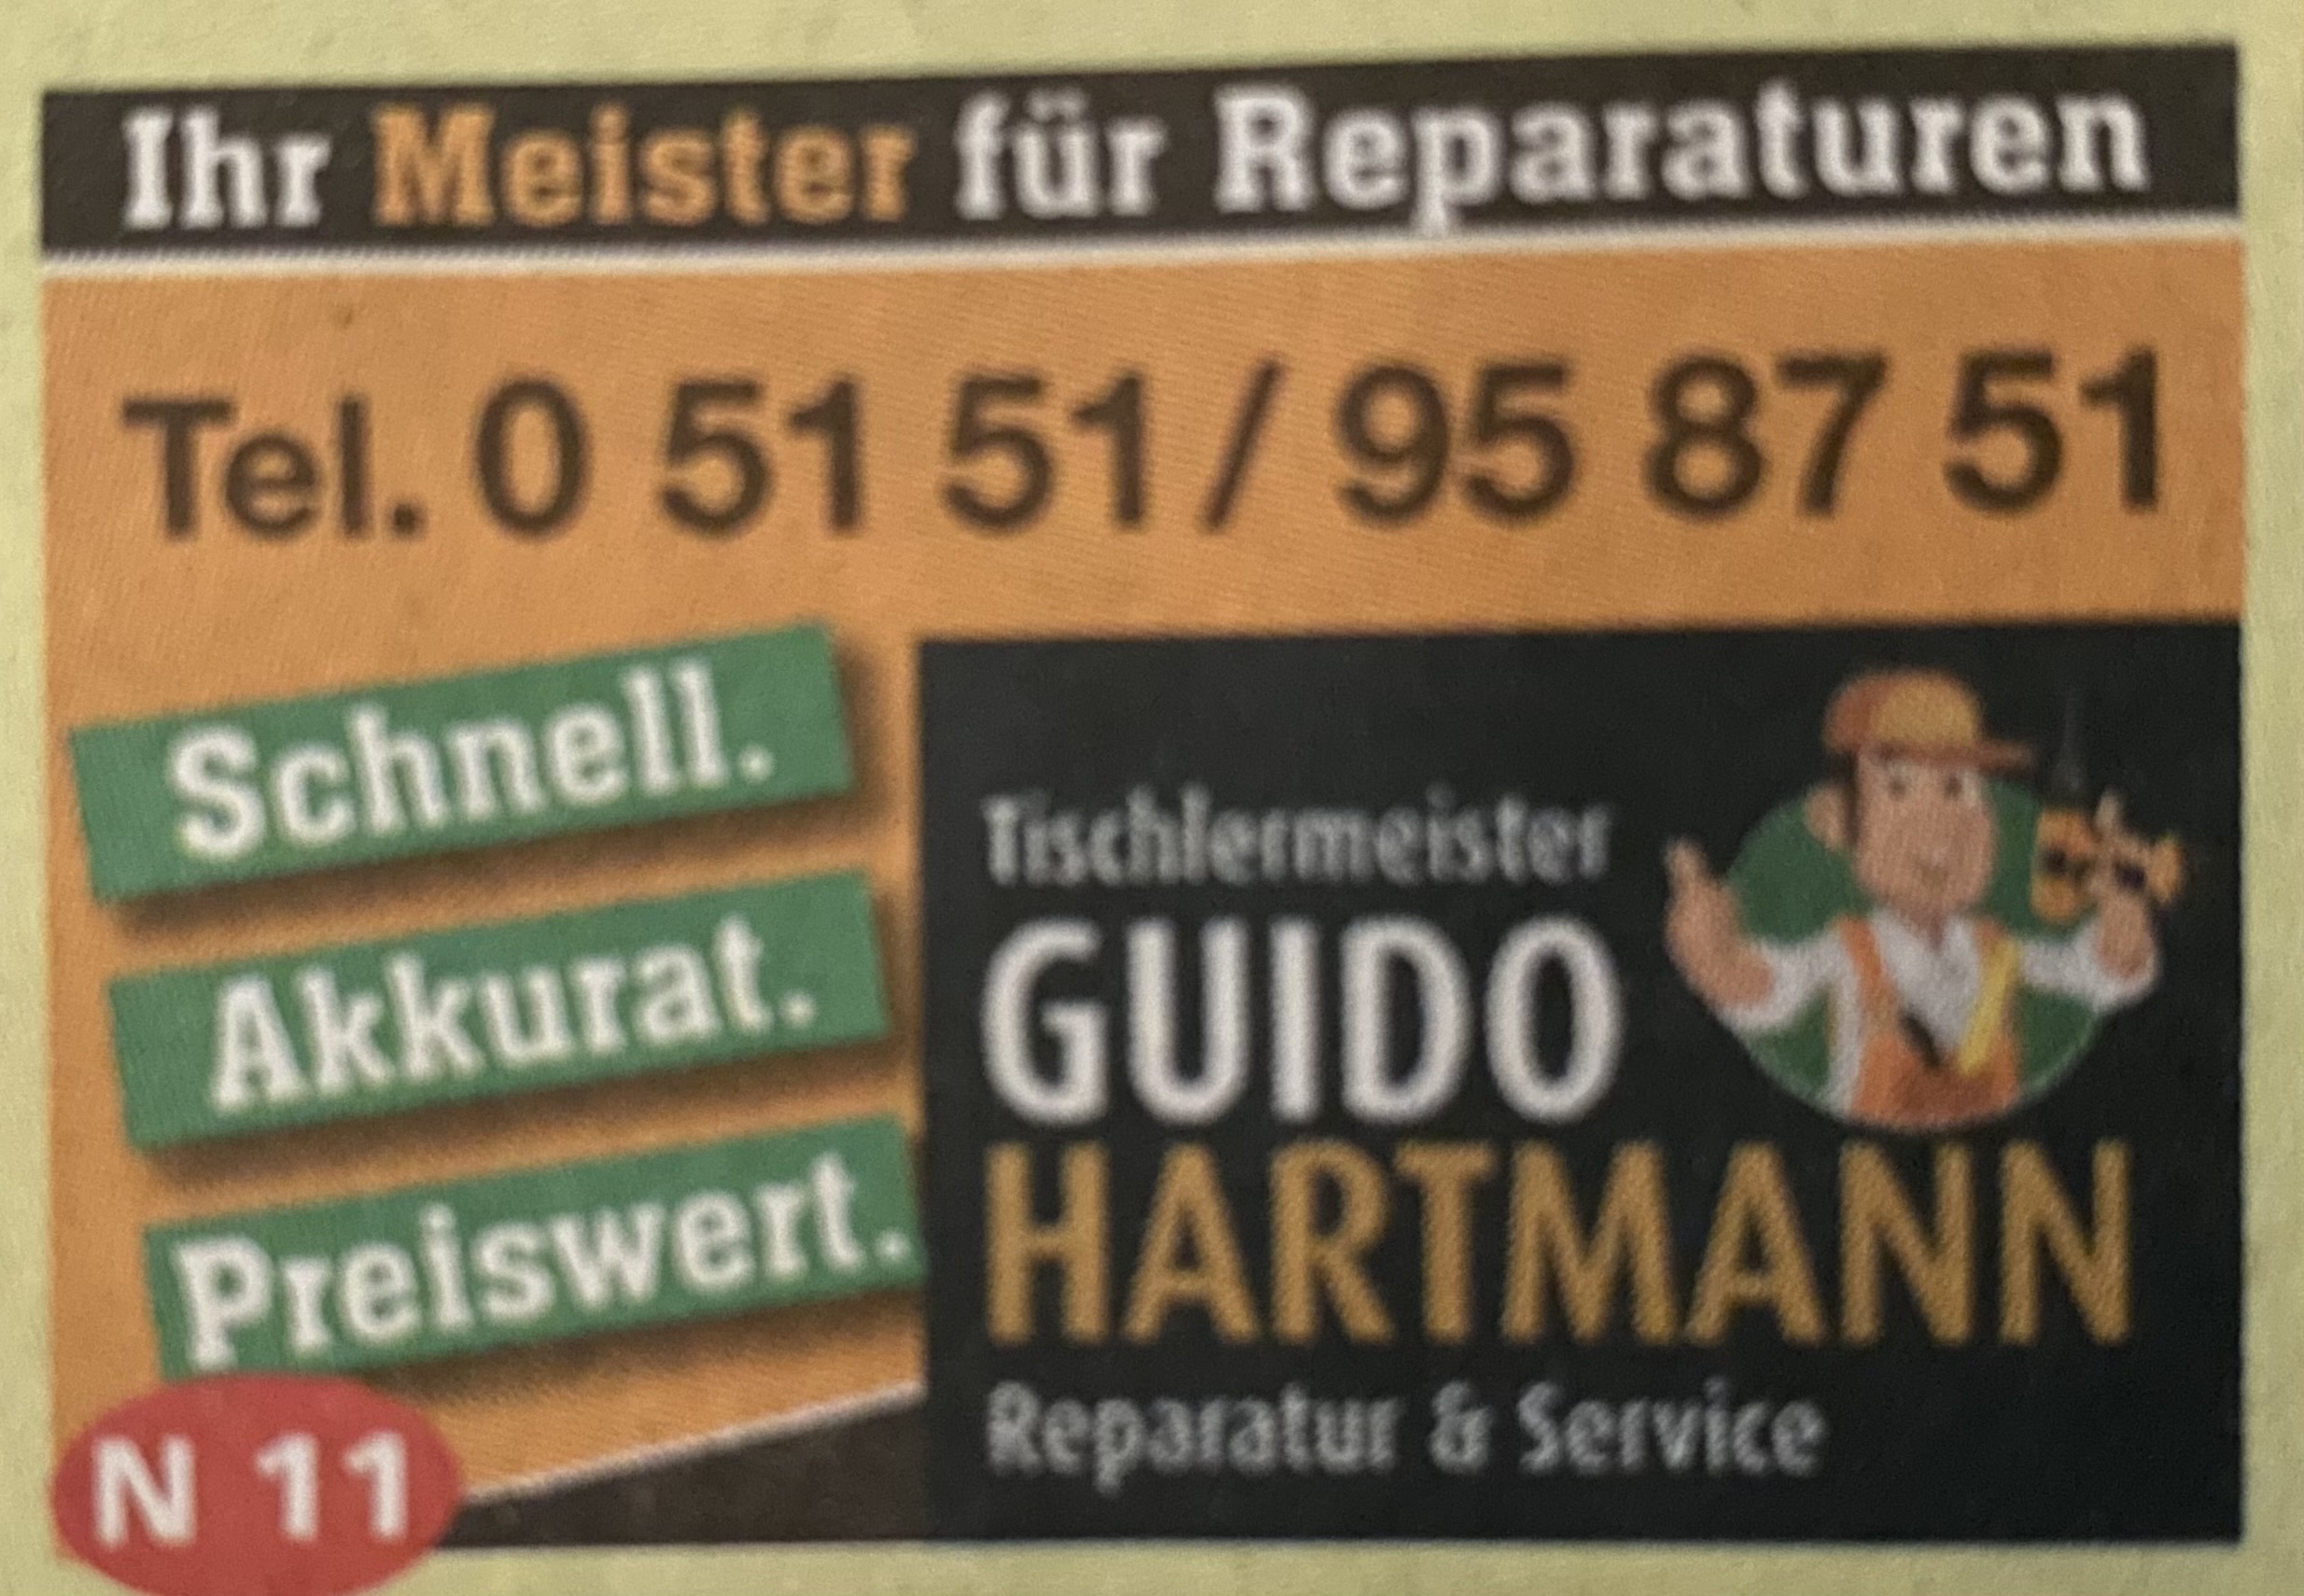 Bild 1 Tischlermeister Guido Hartmann Reparatur & Service in Hameln